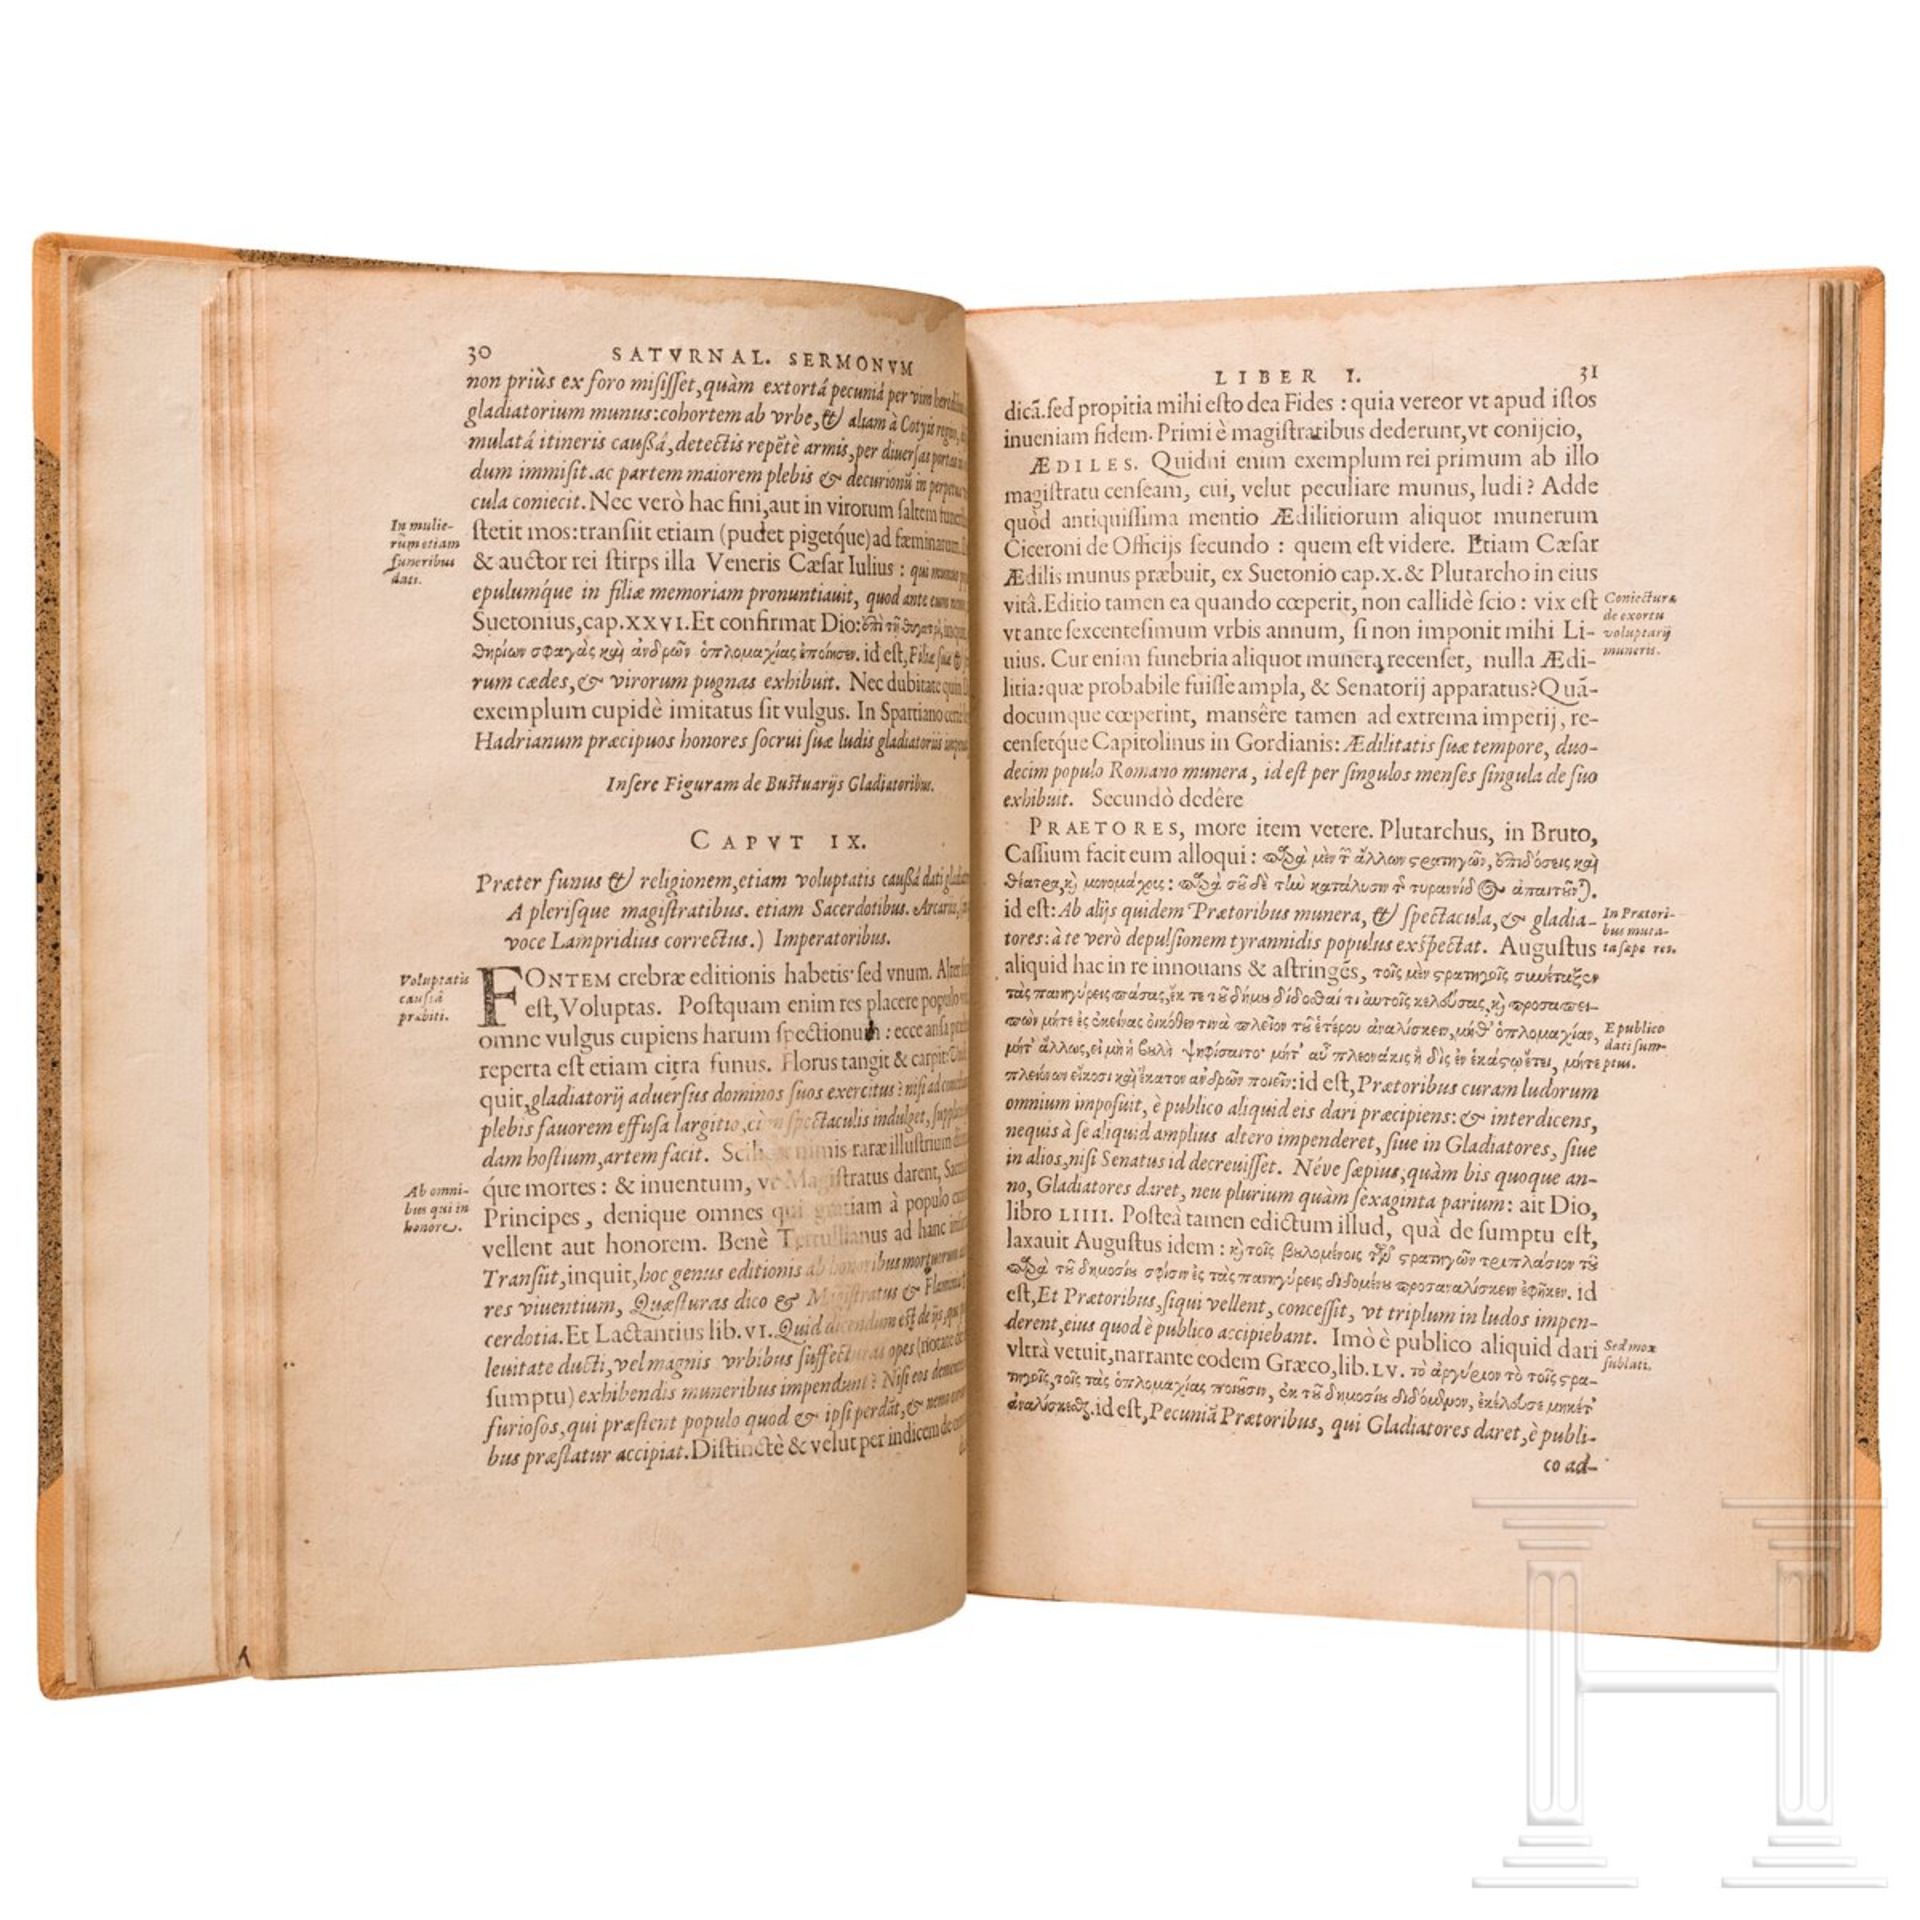 Iustus Lipsius, "Saturnalium Sermonum Libri Duo, Qui de Gladiatoribus", Antwerpen, 1604 - Bild 3 aus 5